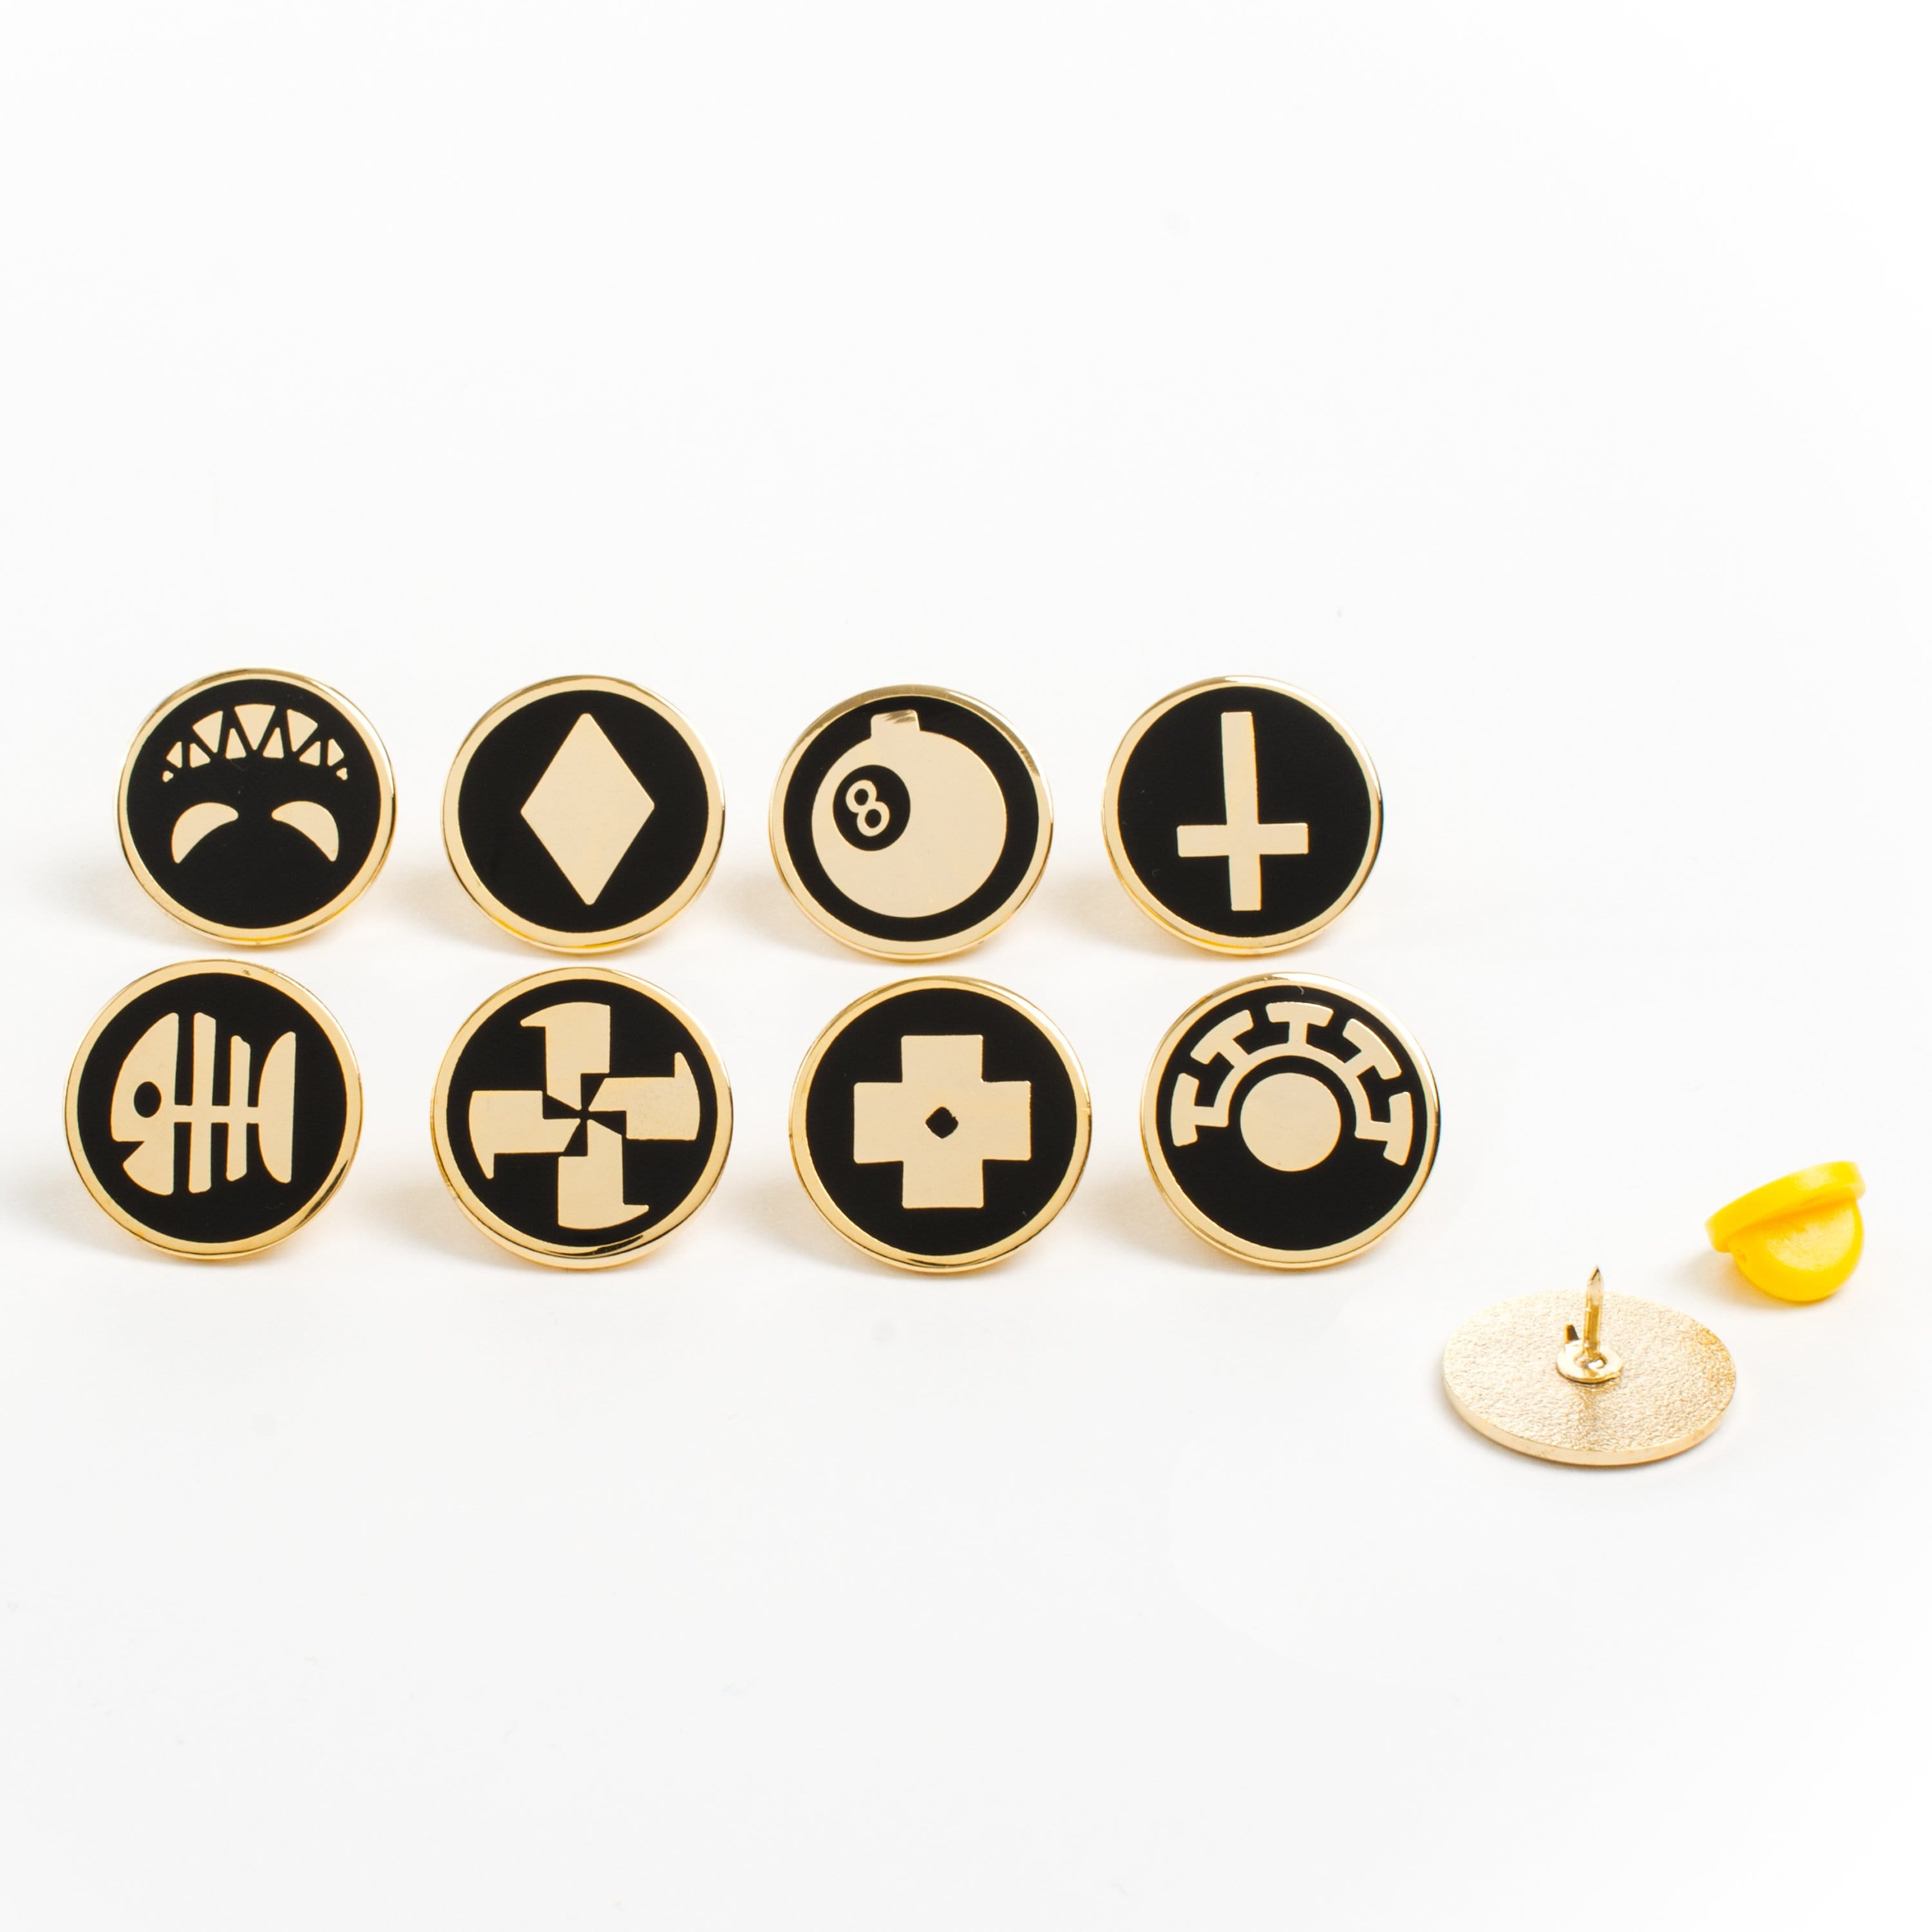 Skullgirls - Character Icons Pin Set